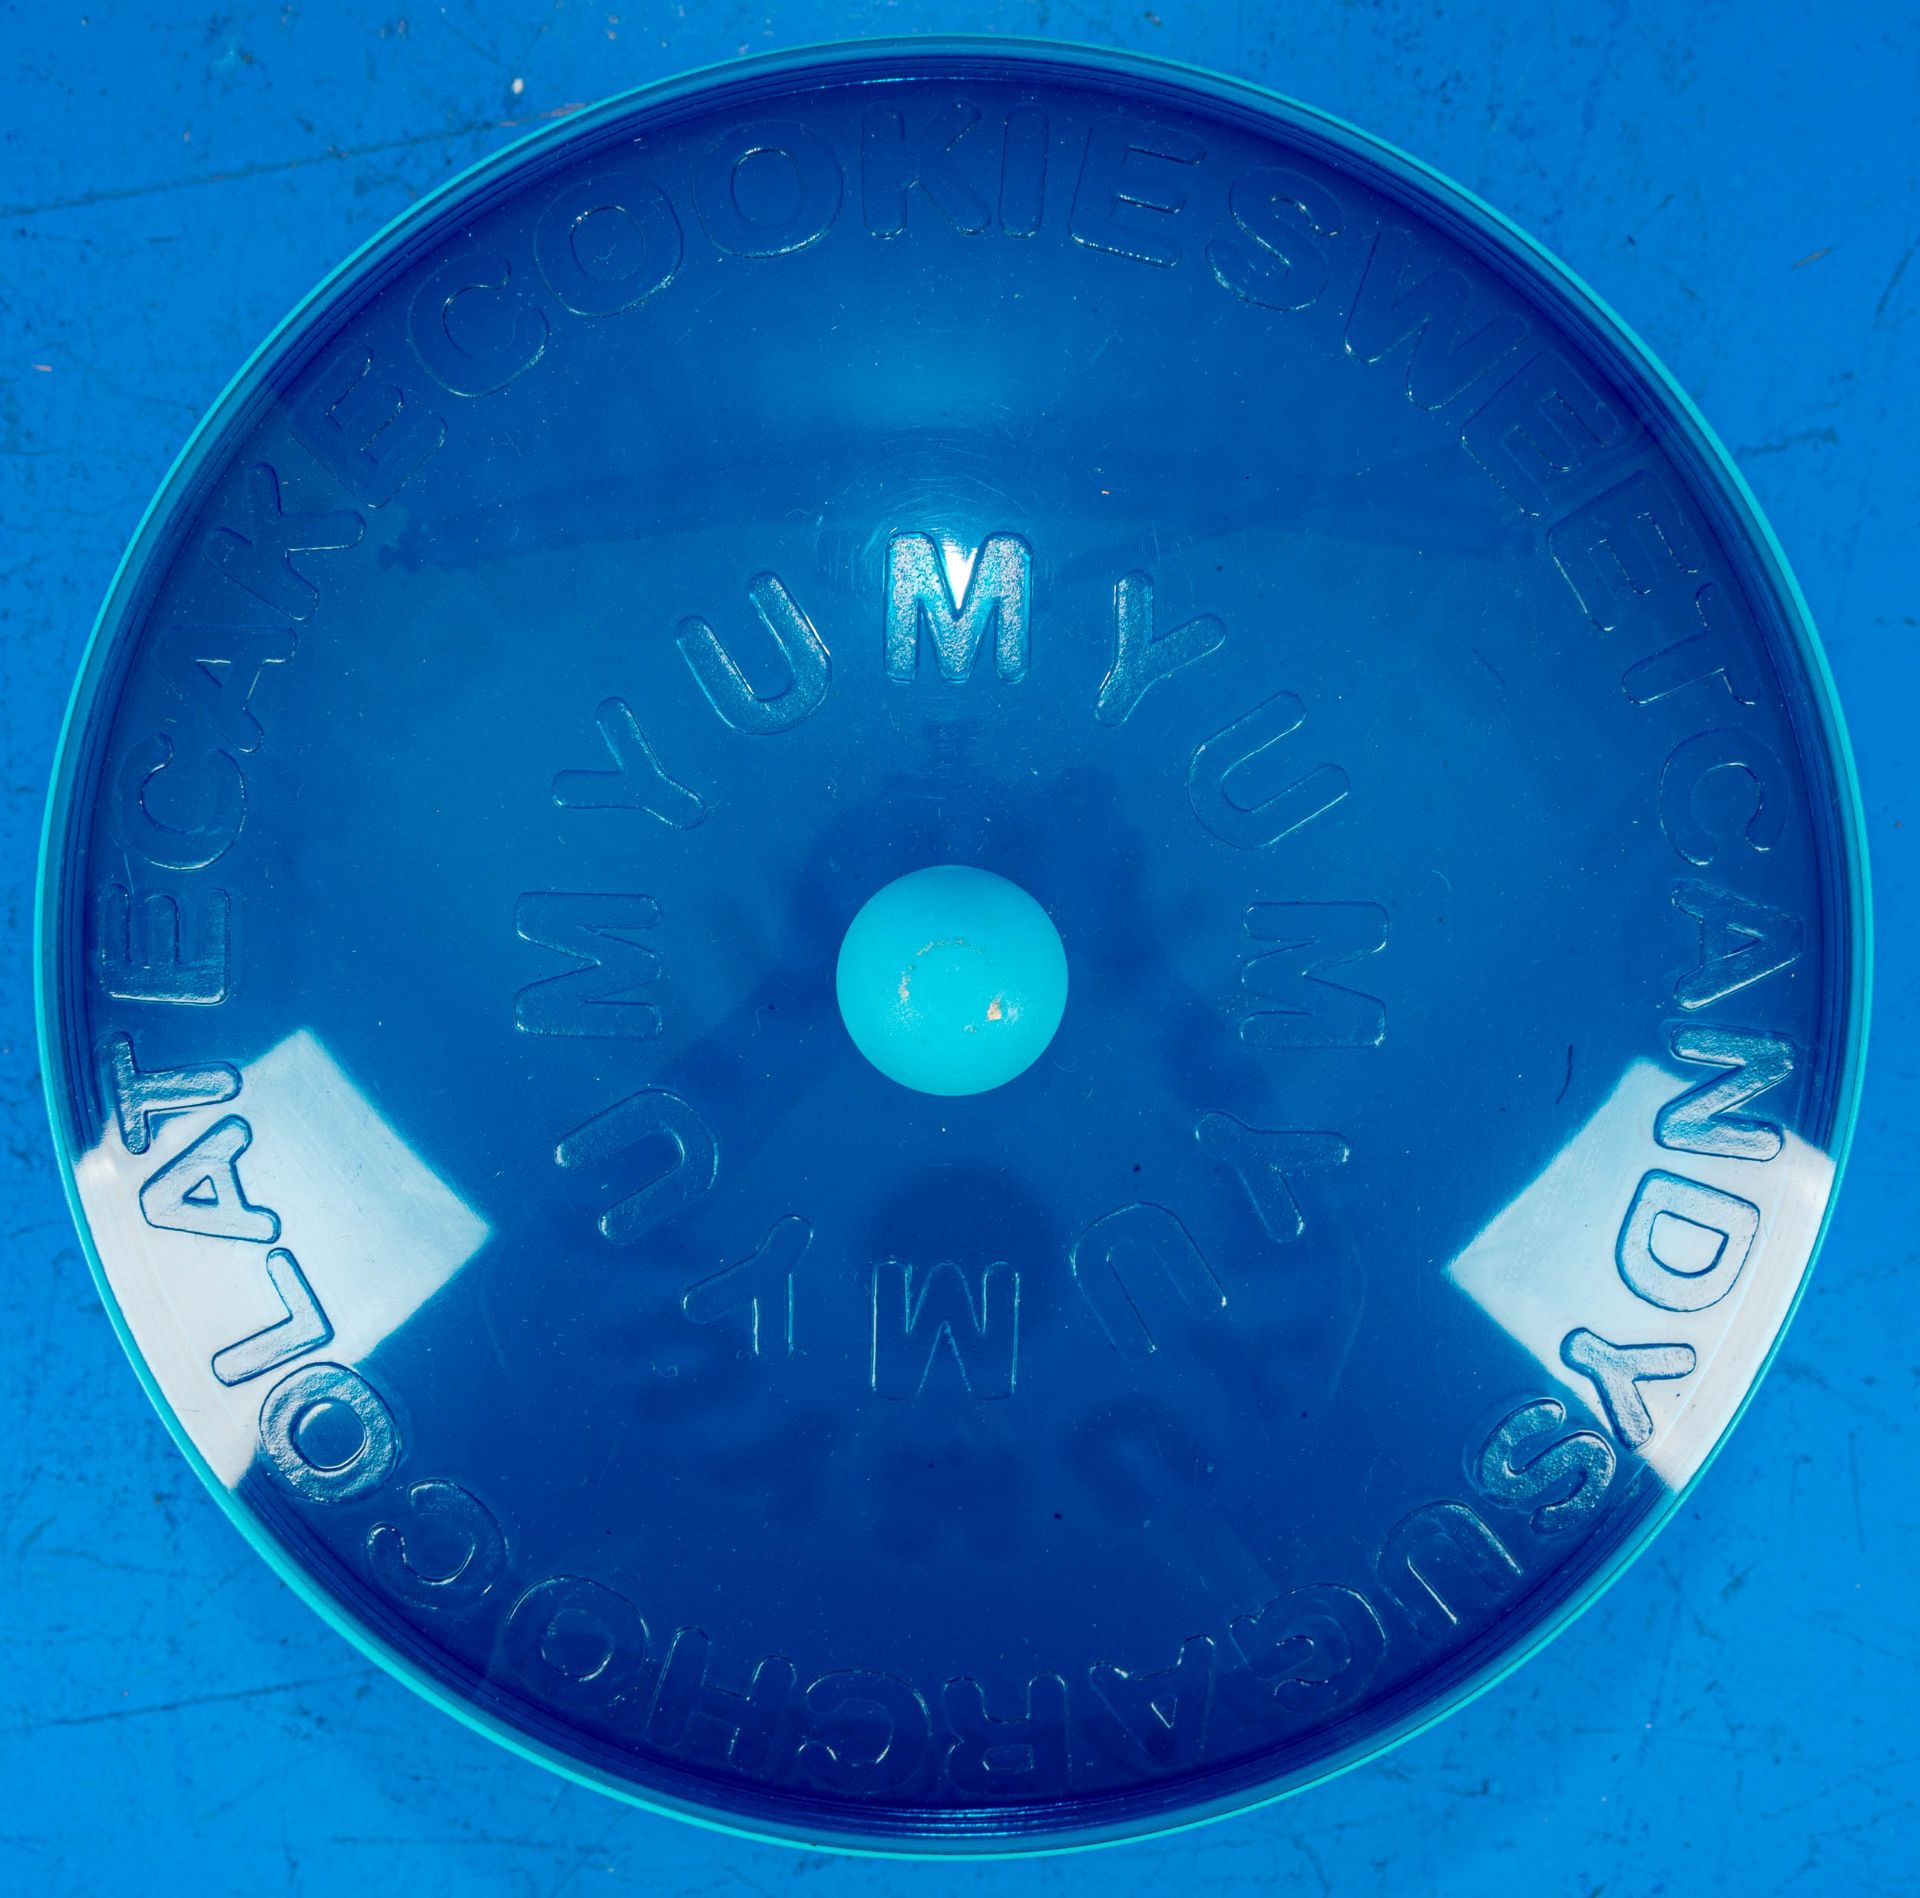 Bläuliche "YUMYUM" Keksdose, "Alessi", Kunststoff, geringe Alters- und Gebrauchsspuren; ca. 14,5 cm - Bild 6 aus 8